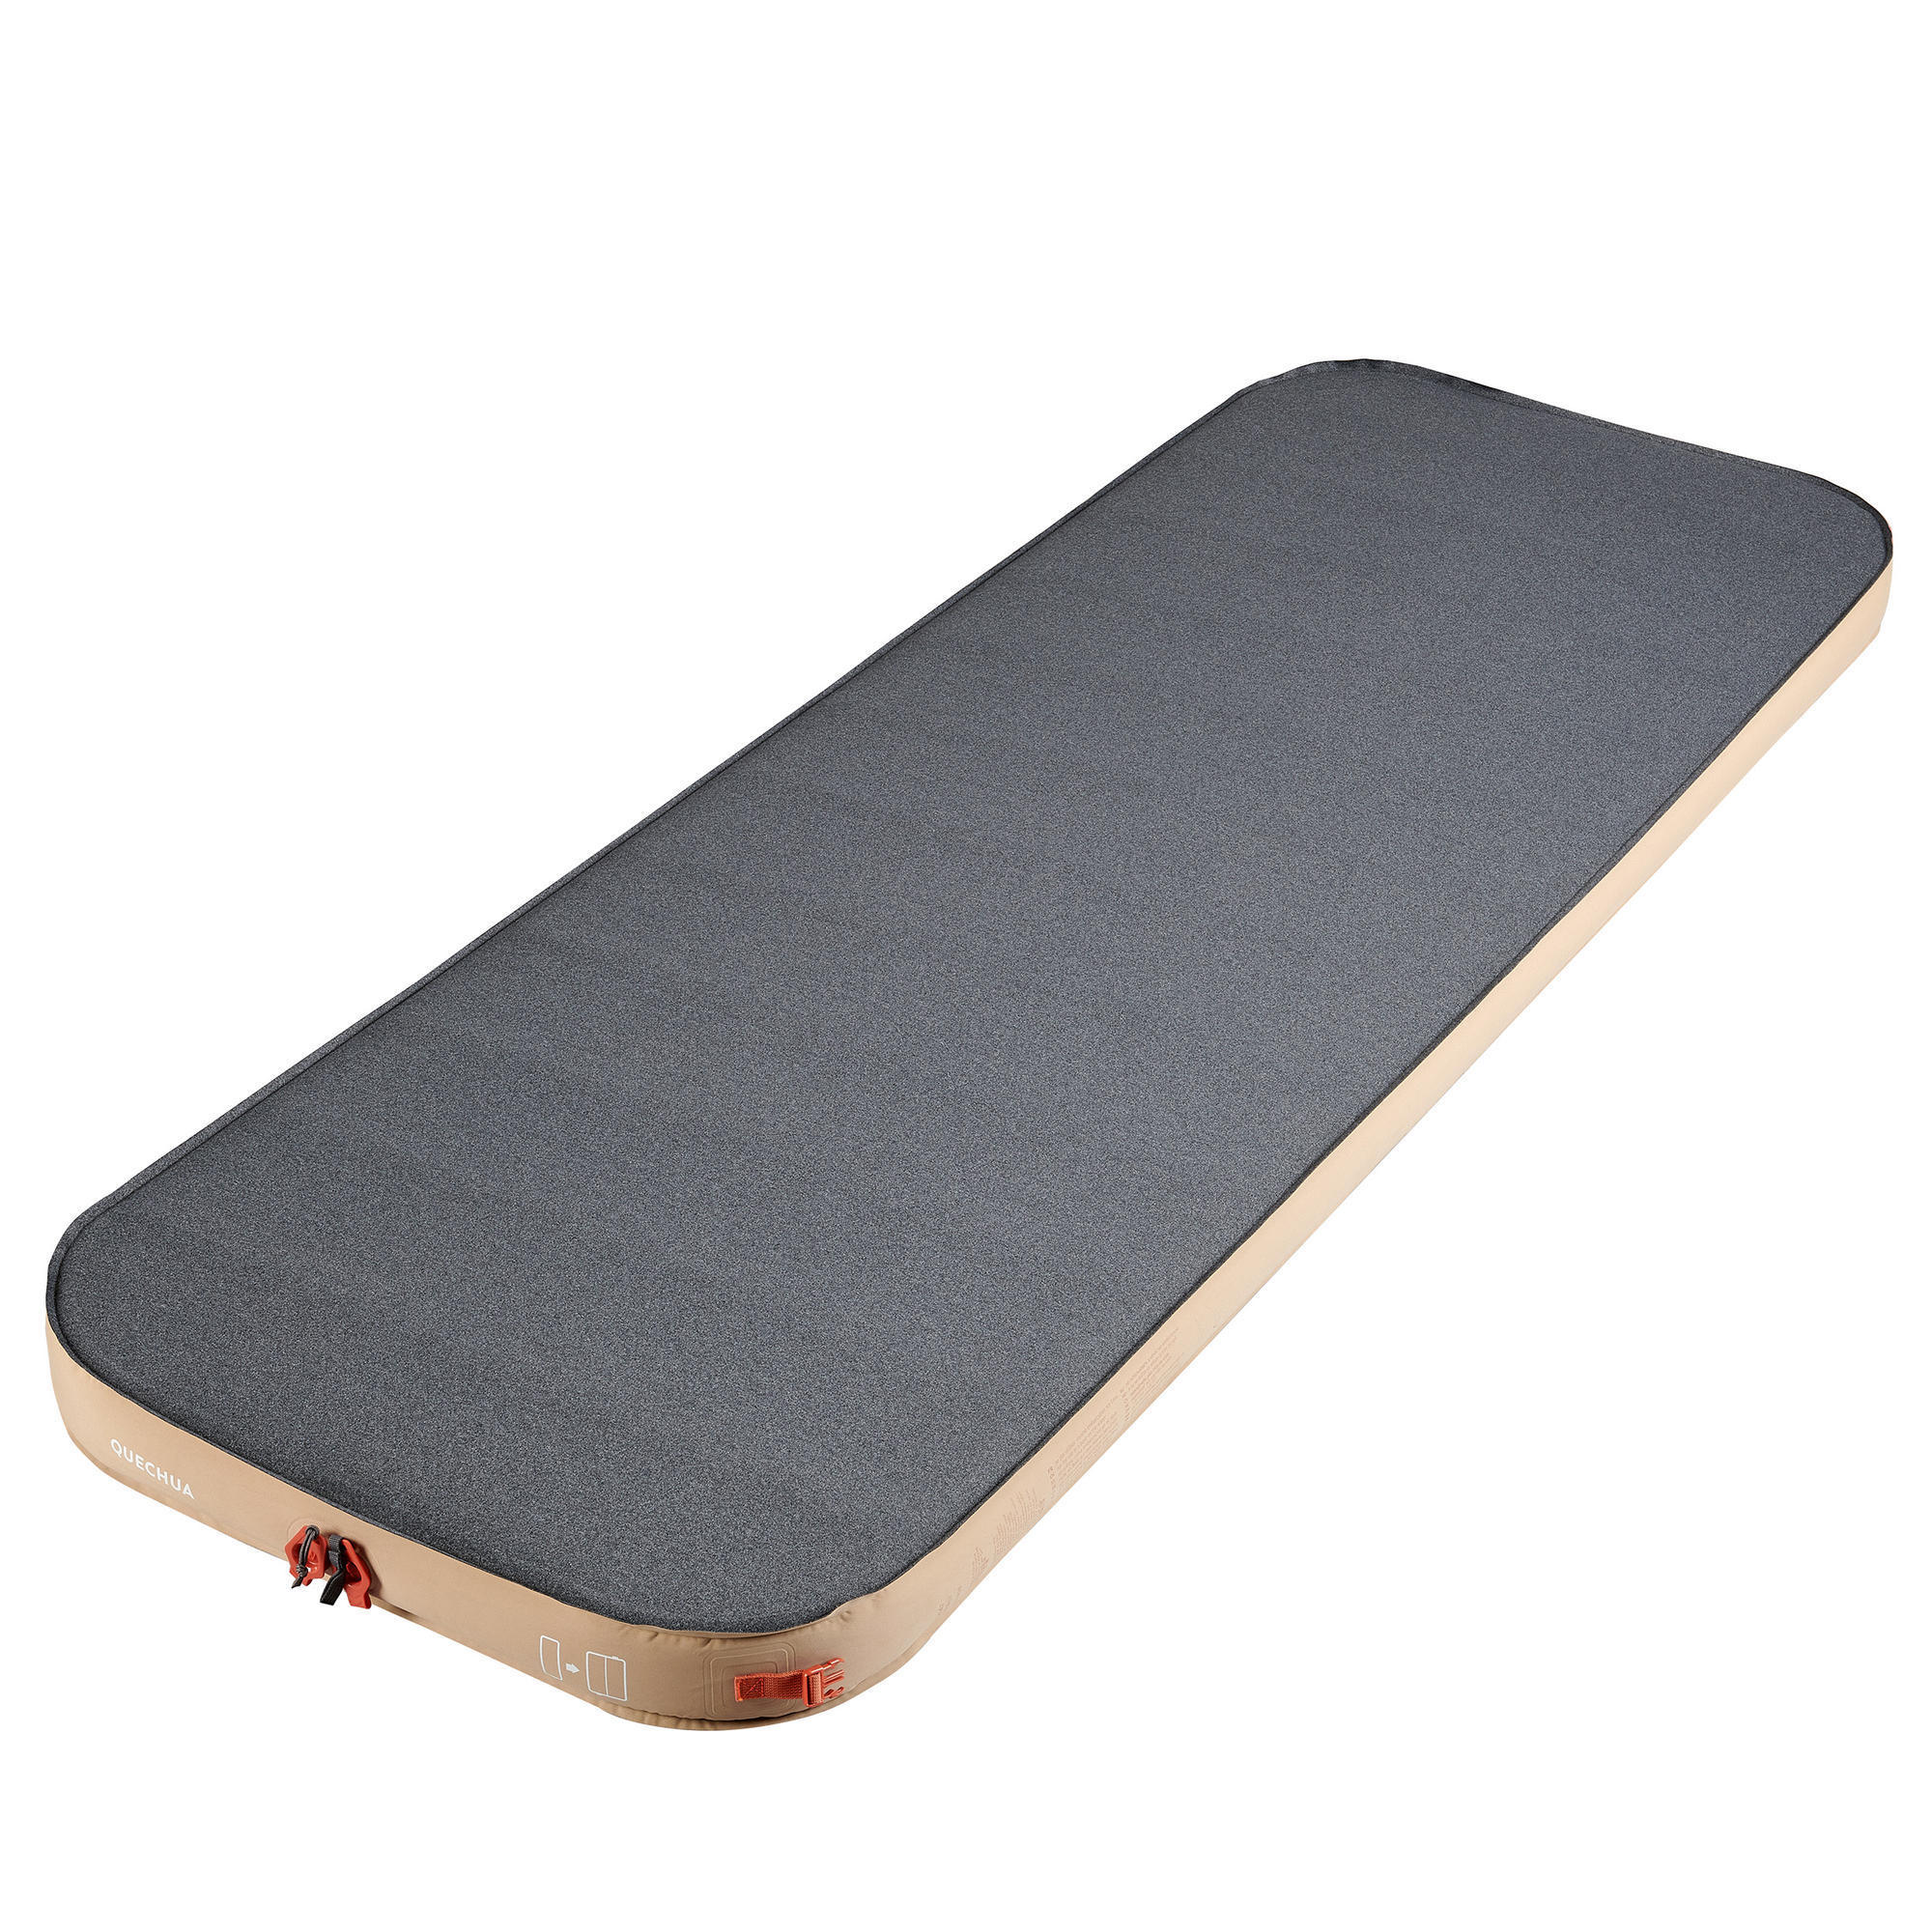 camping mattress decathlon